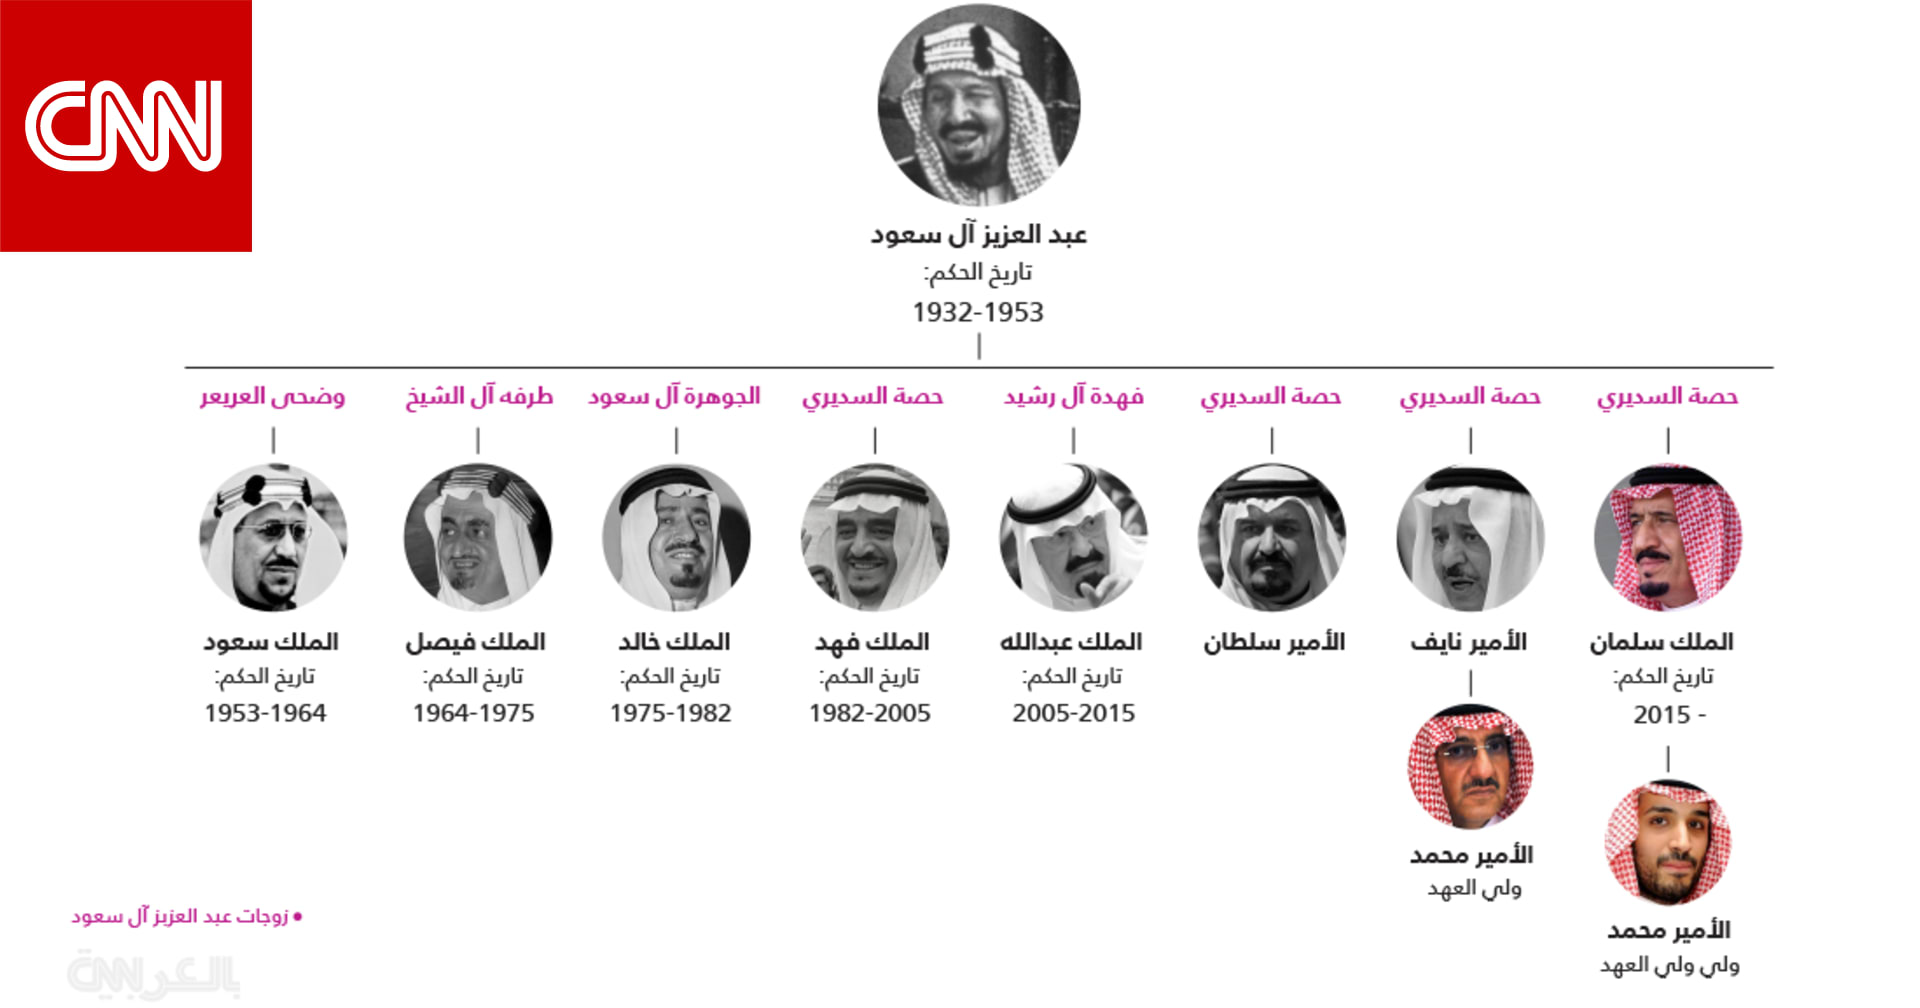 تاريخ الملوك السبعة للمملكة العربية السعودية وتسلسل انتقال الحكم وولاية